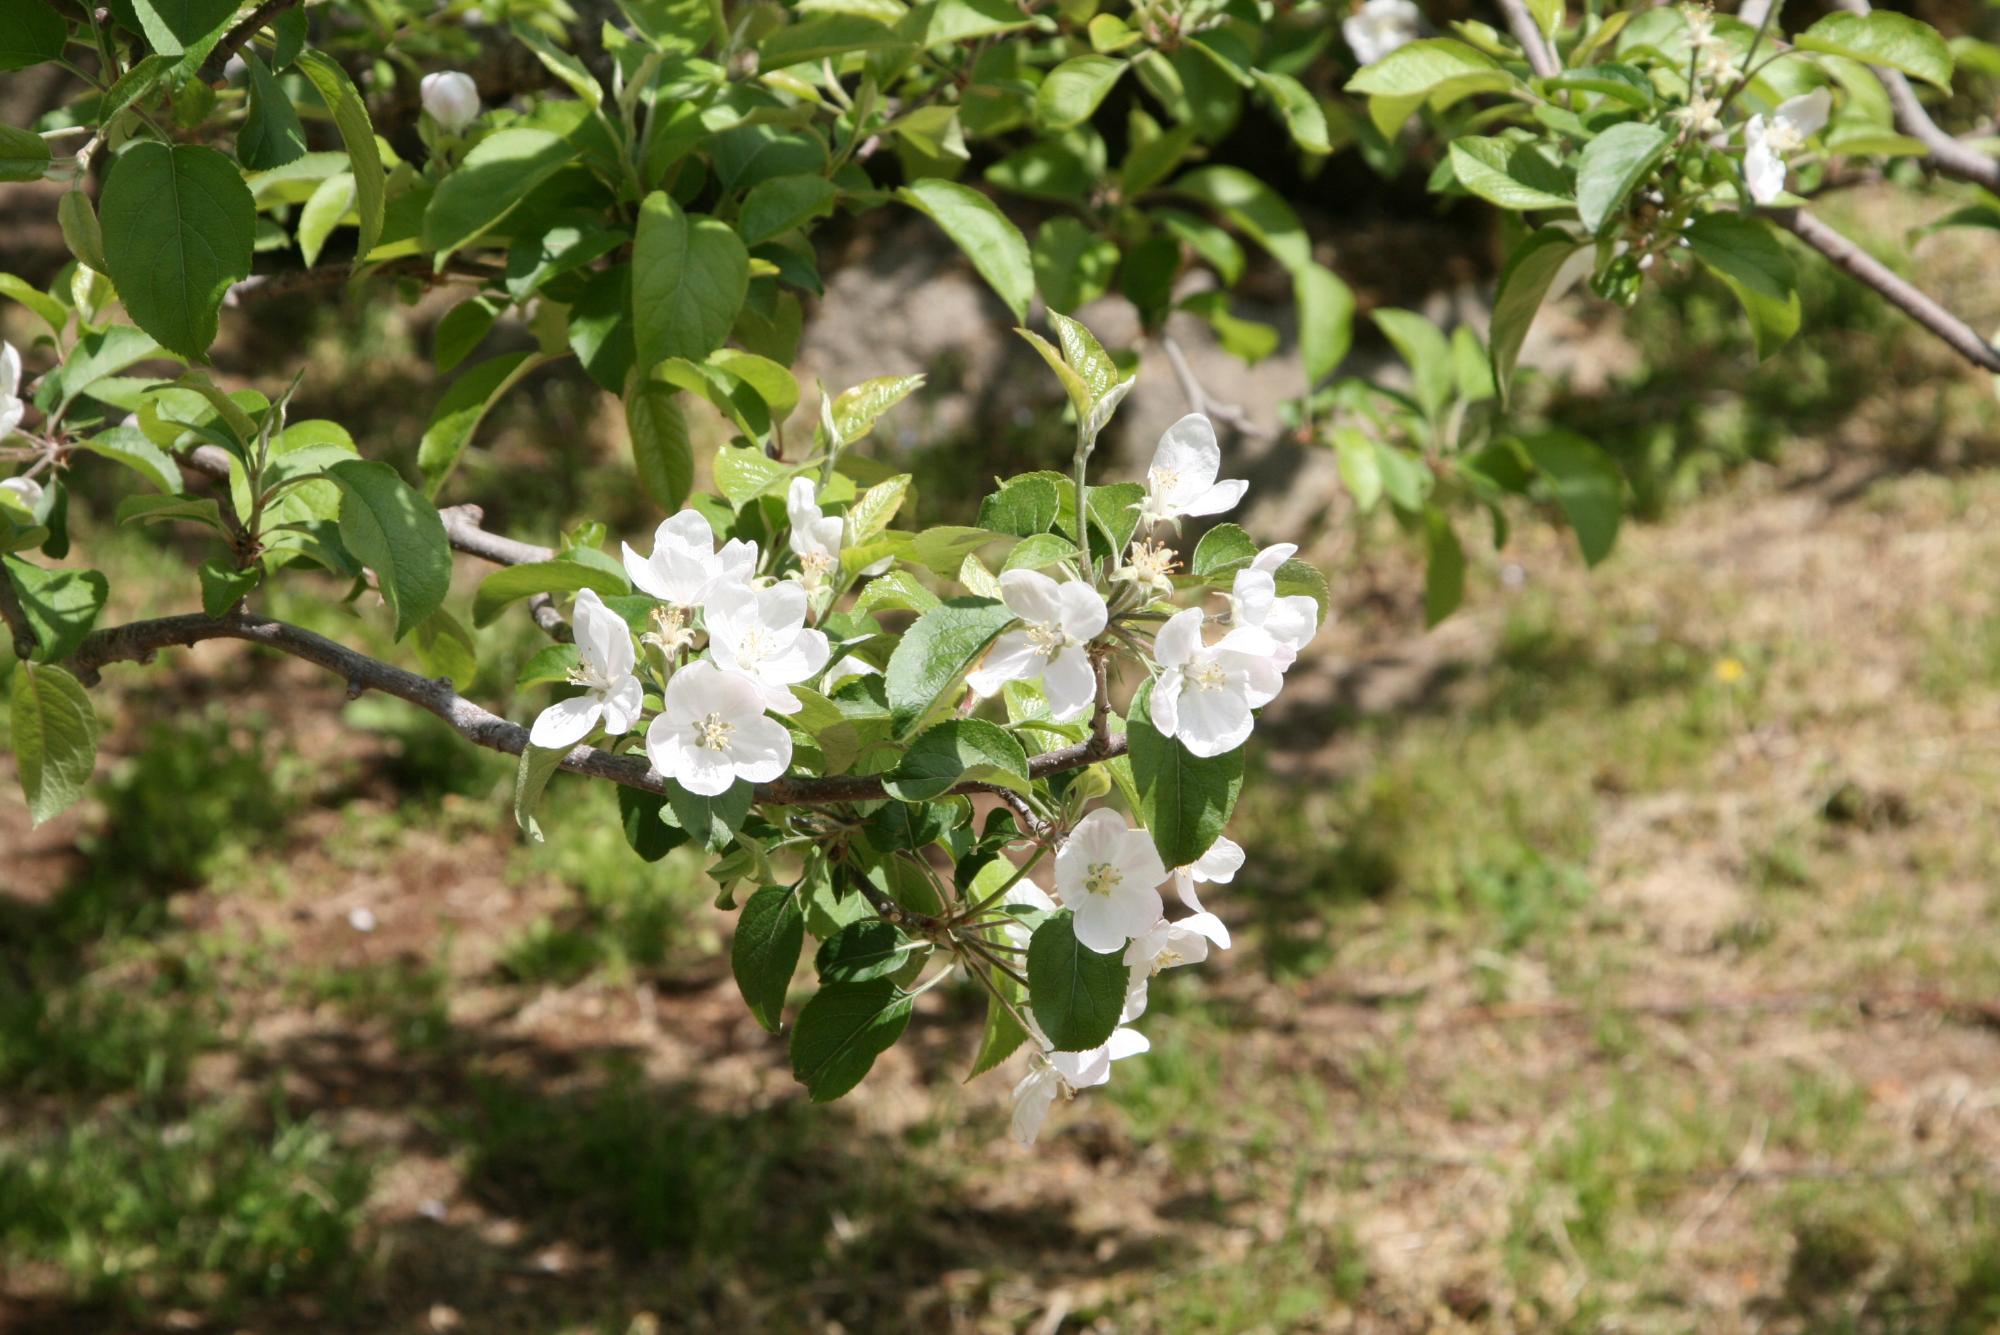 原観光りんご園のりんごの木が淡いピンクに近い白い花を咲かせている写真